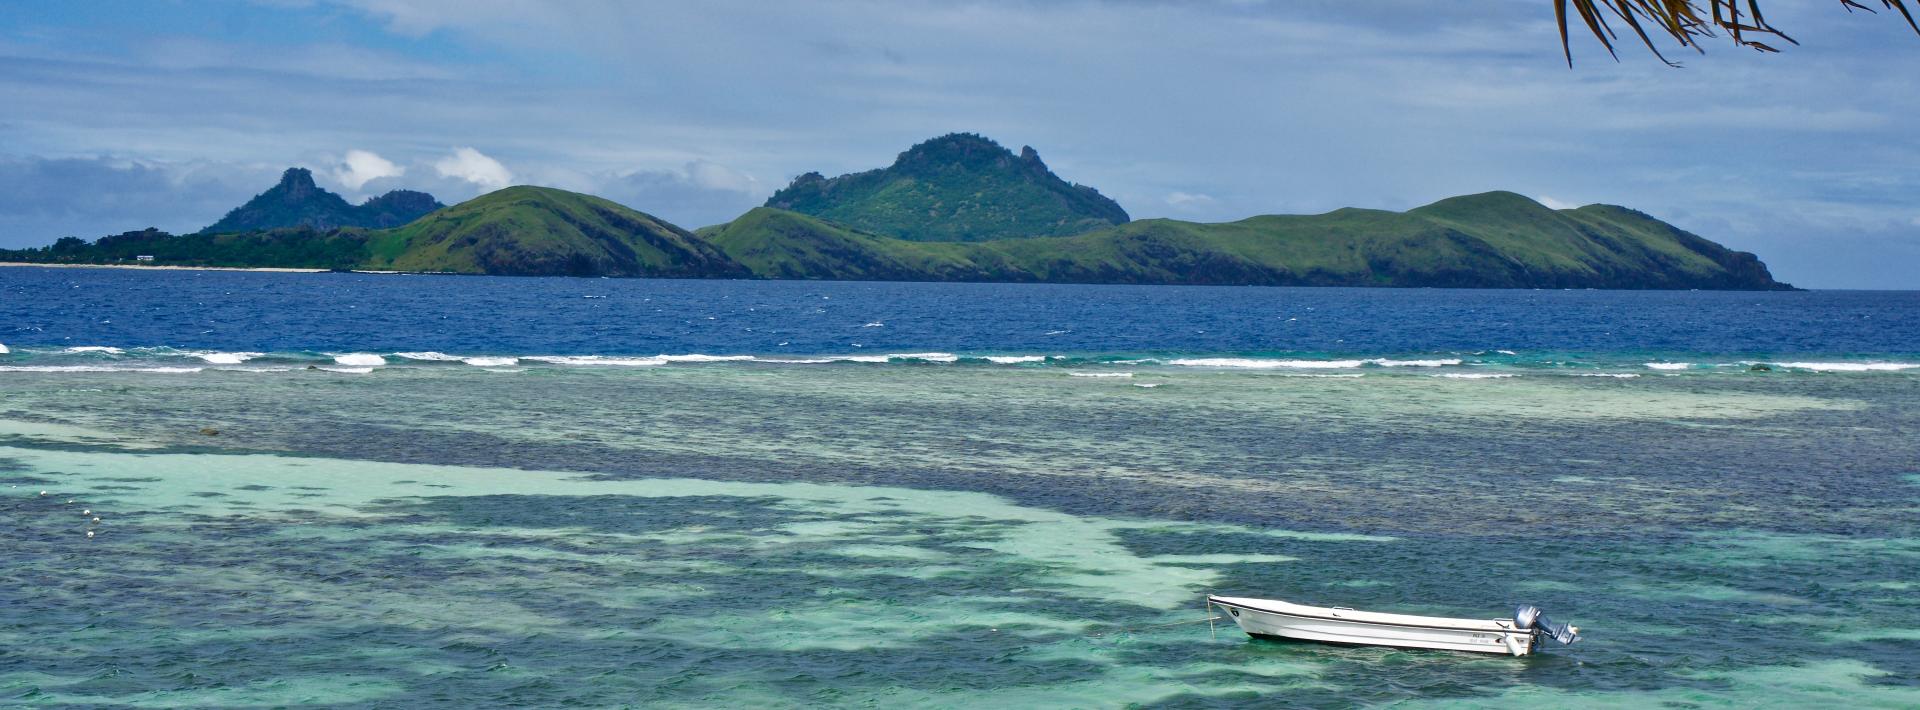 Boat in quiet waters off Fiji